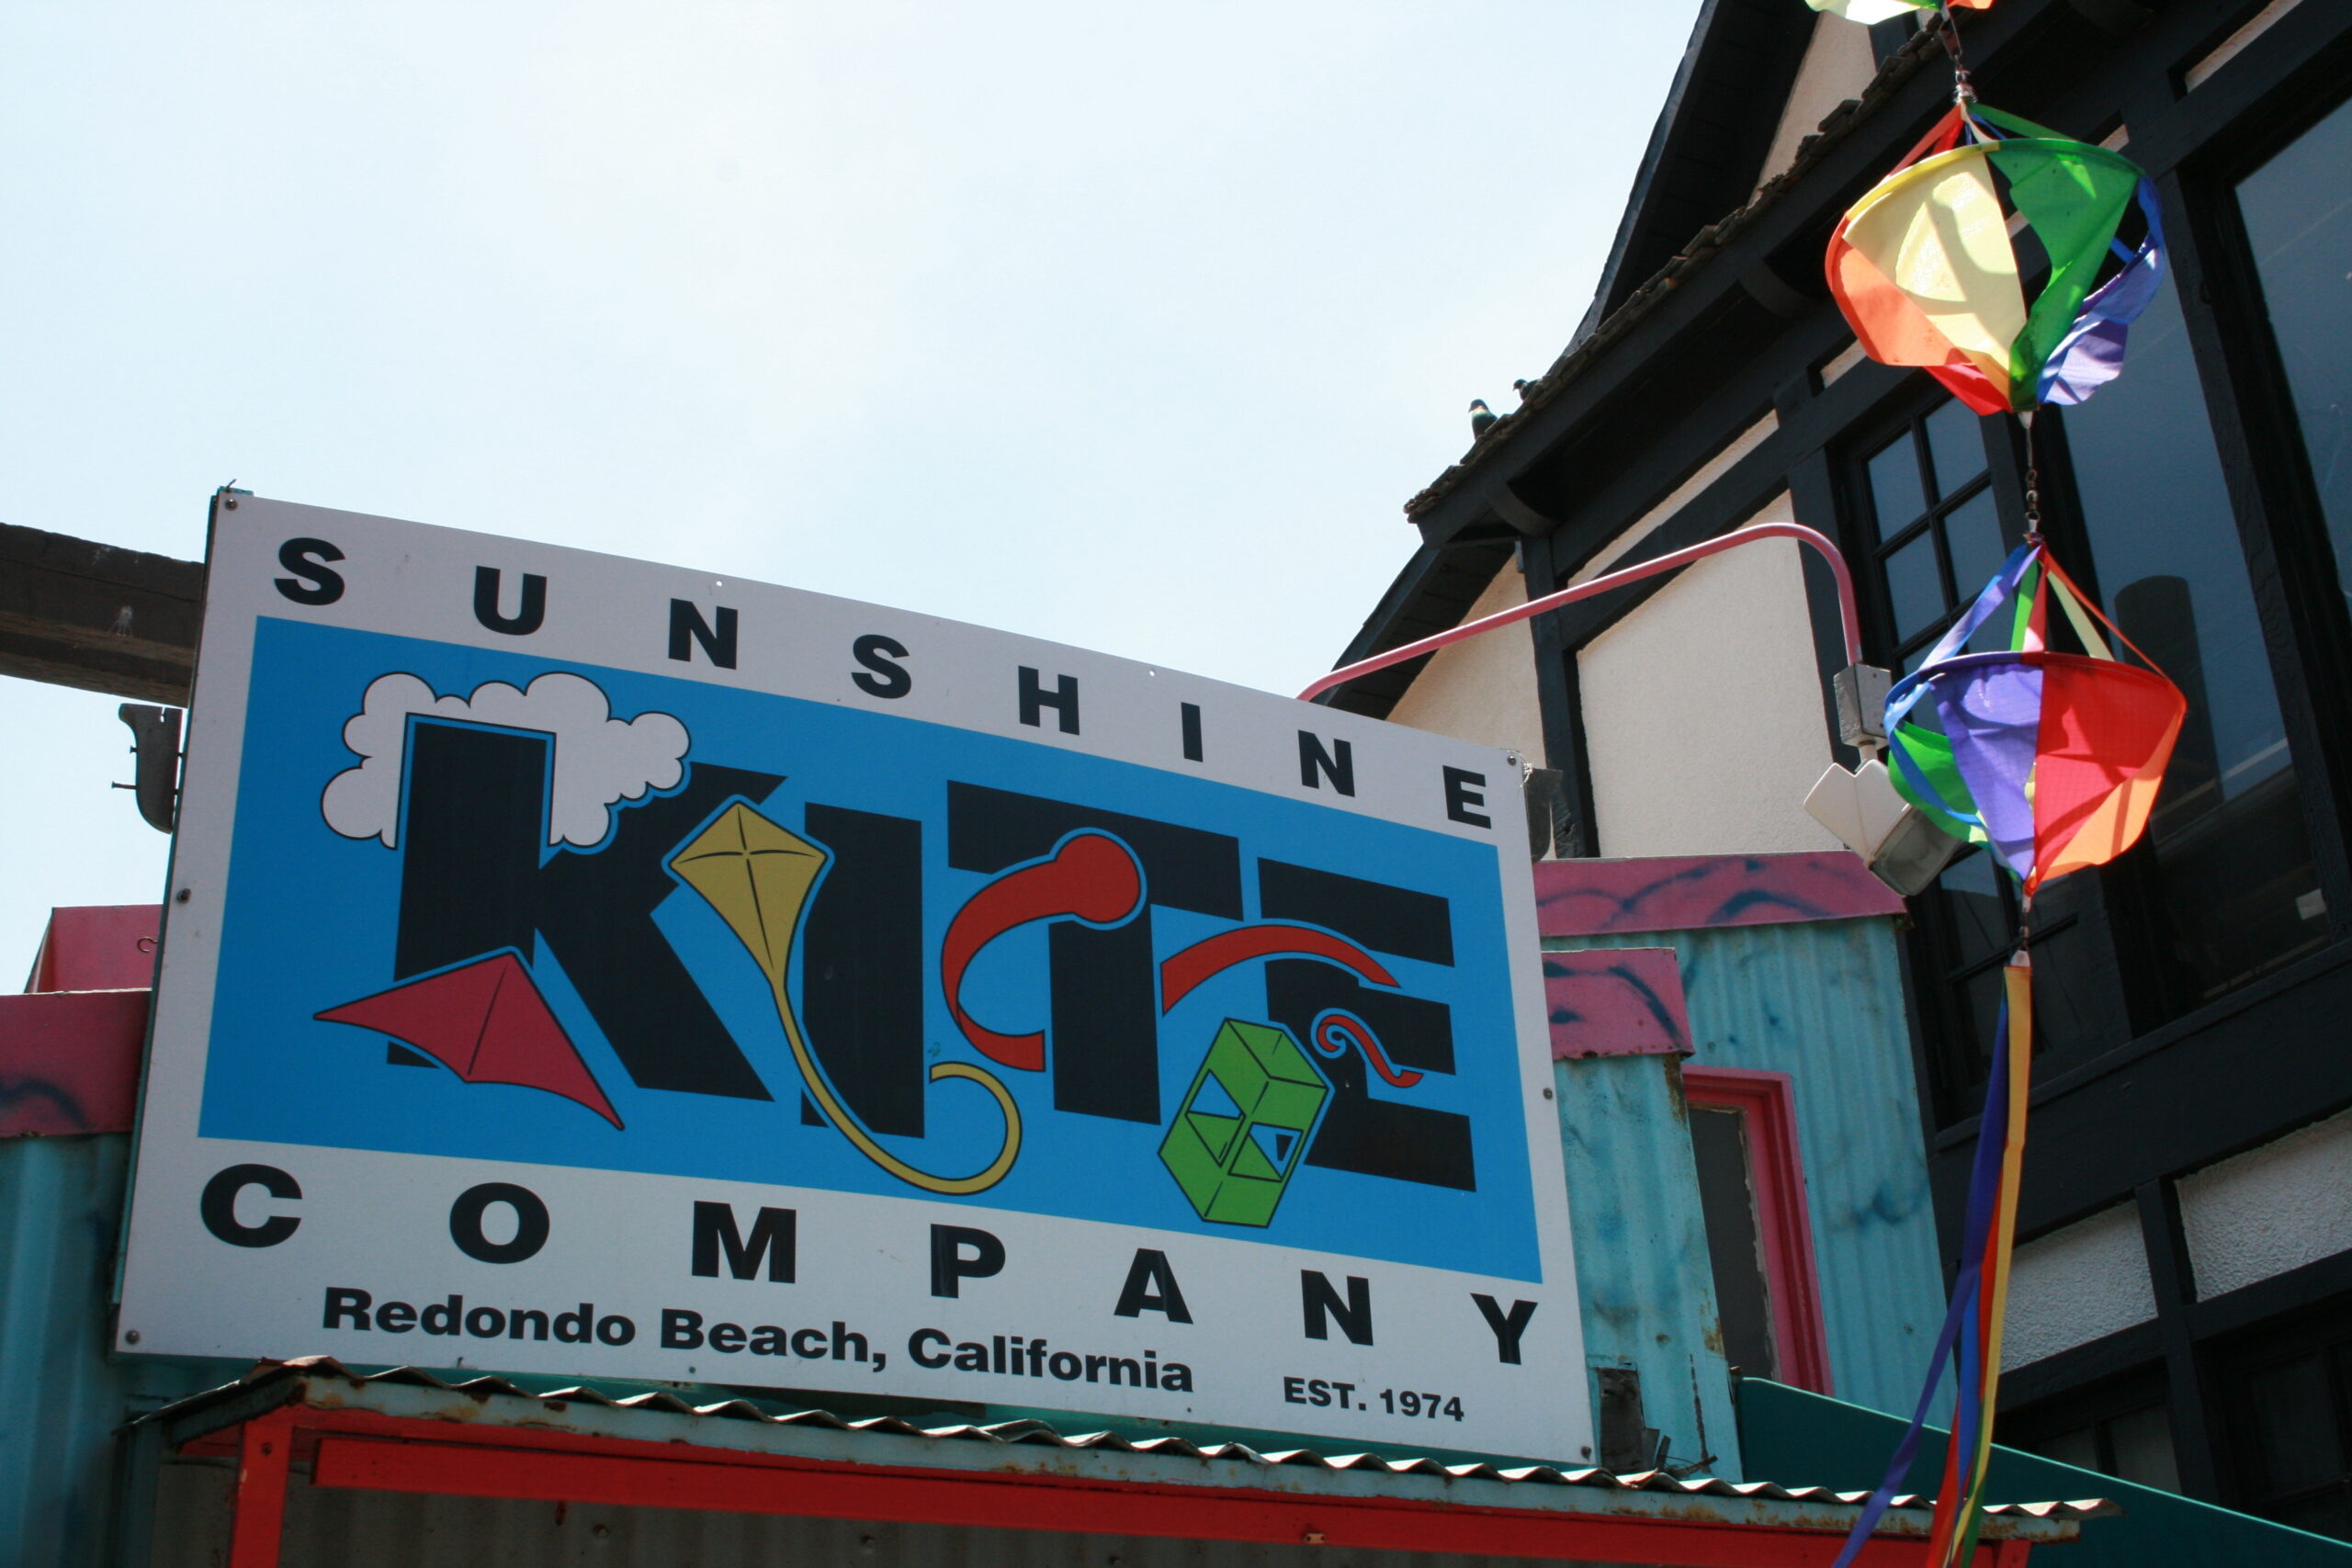 The Sunshine Kite Company in Redondo Beach